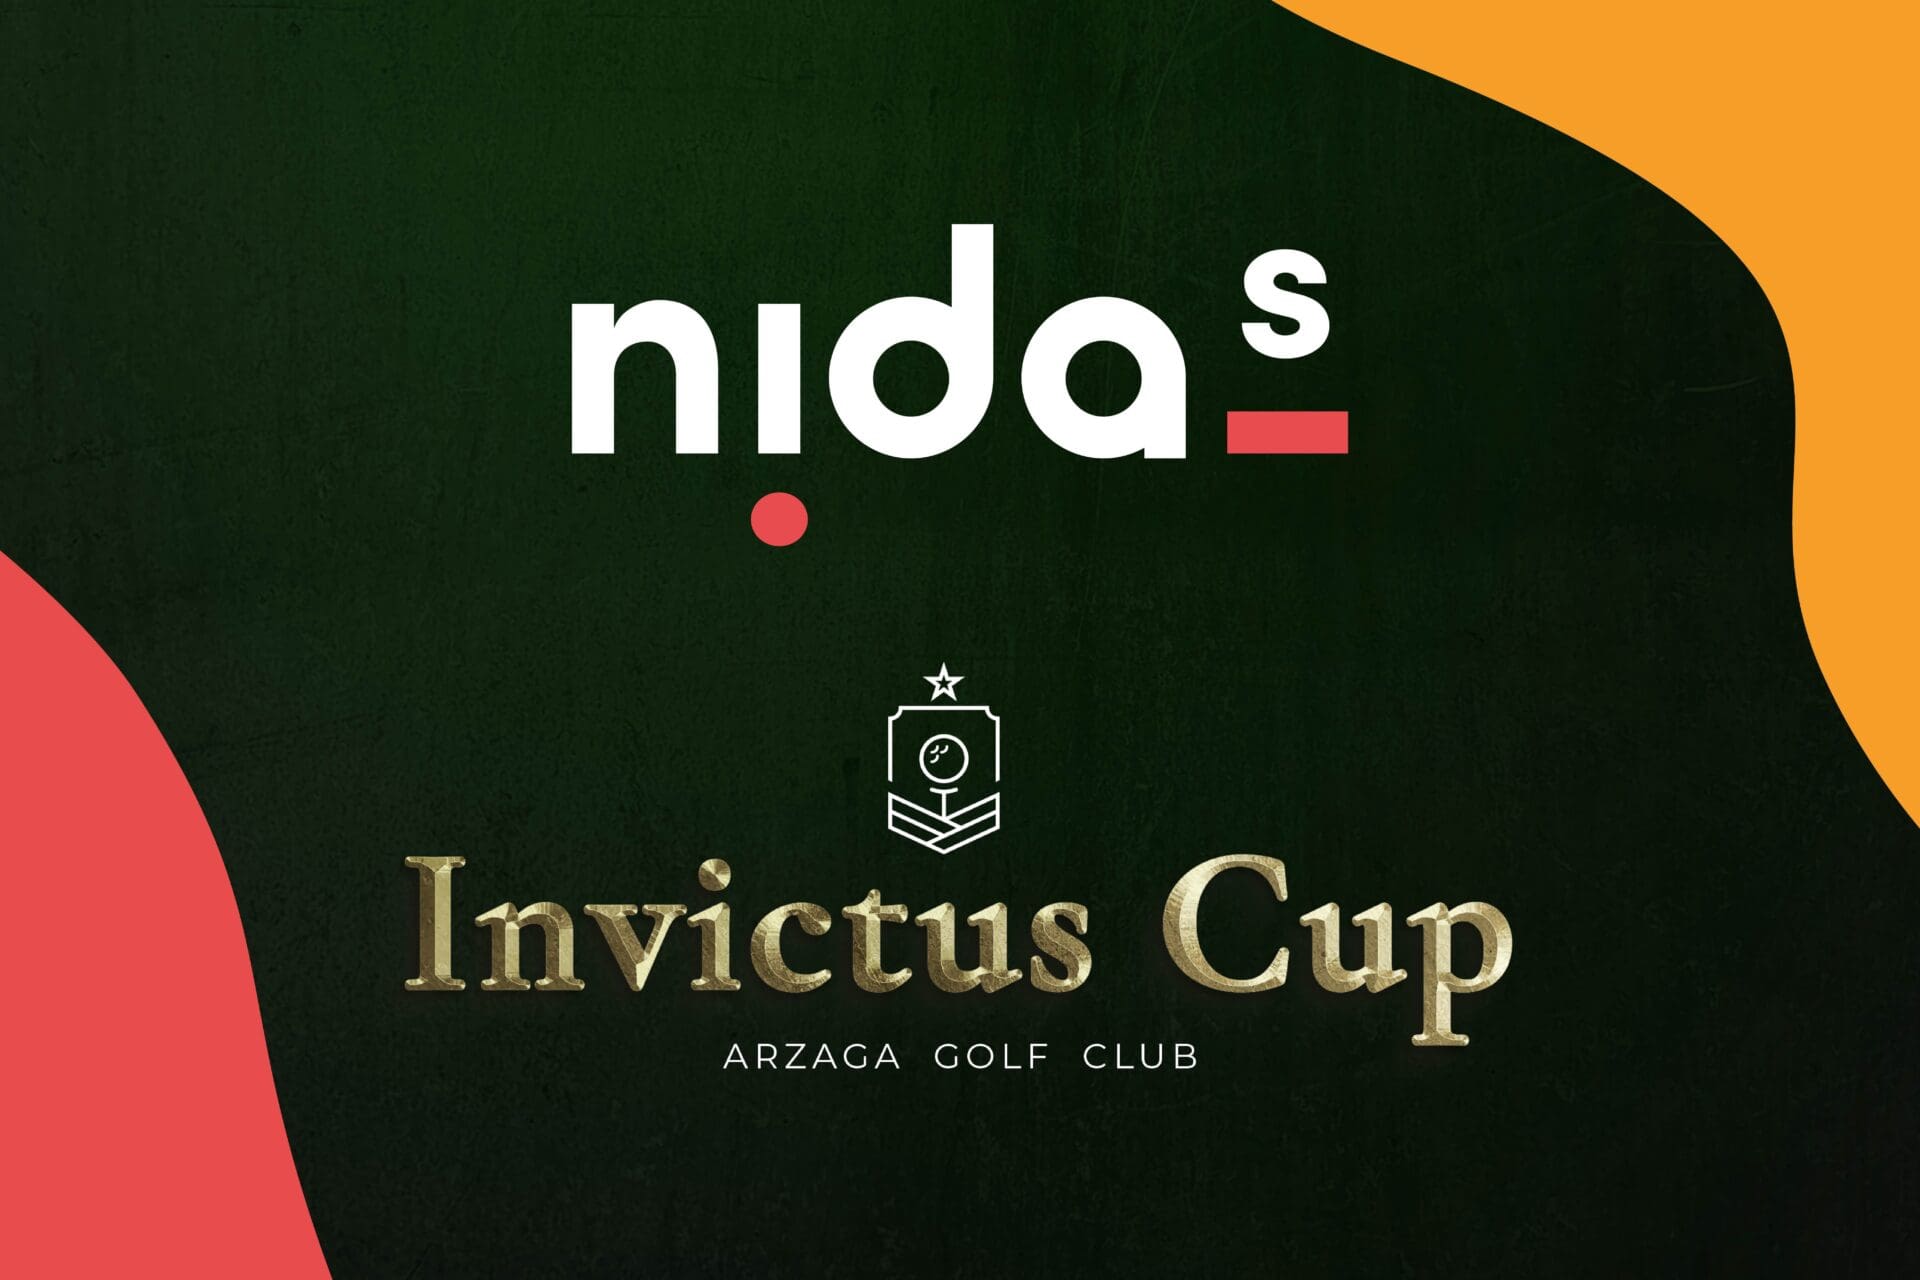 Vi aspettiamo all'Invictus Cup!